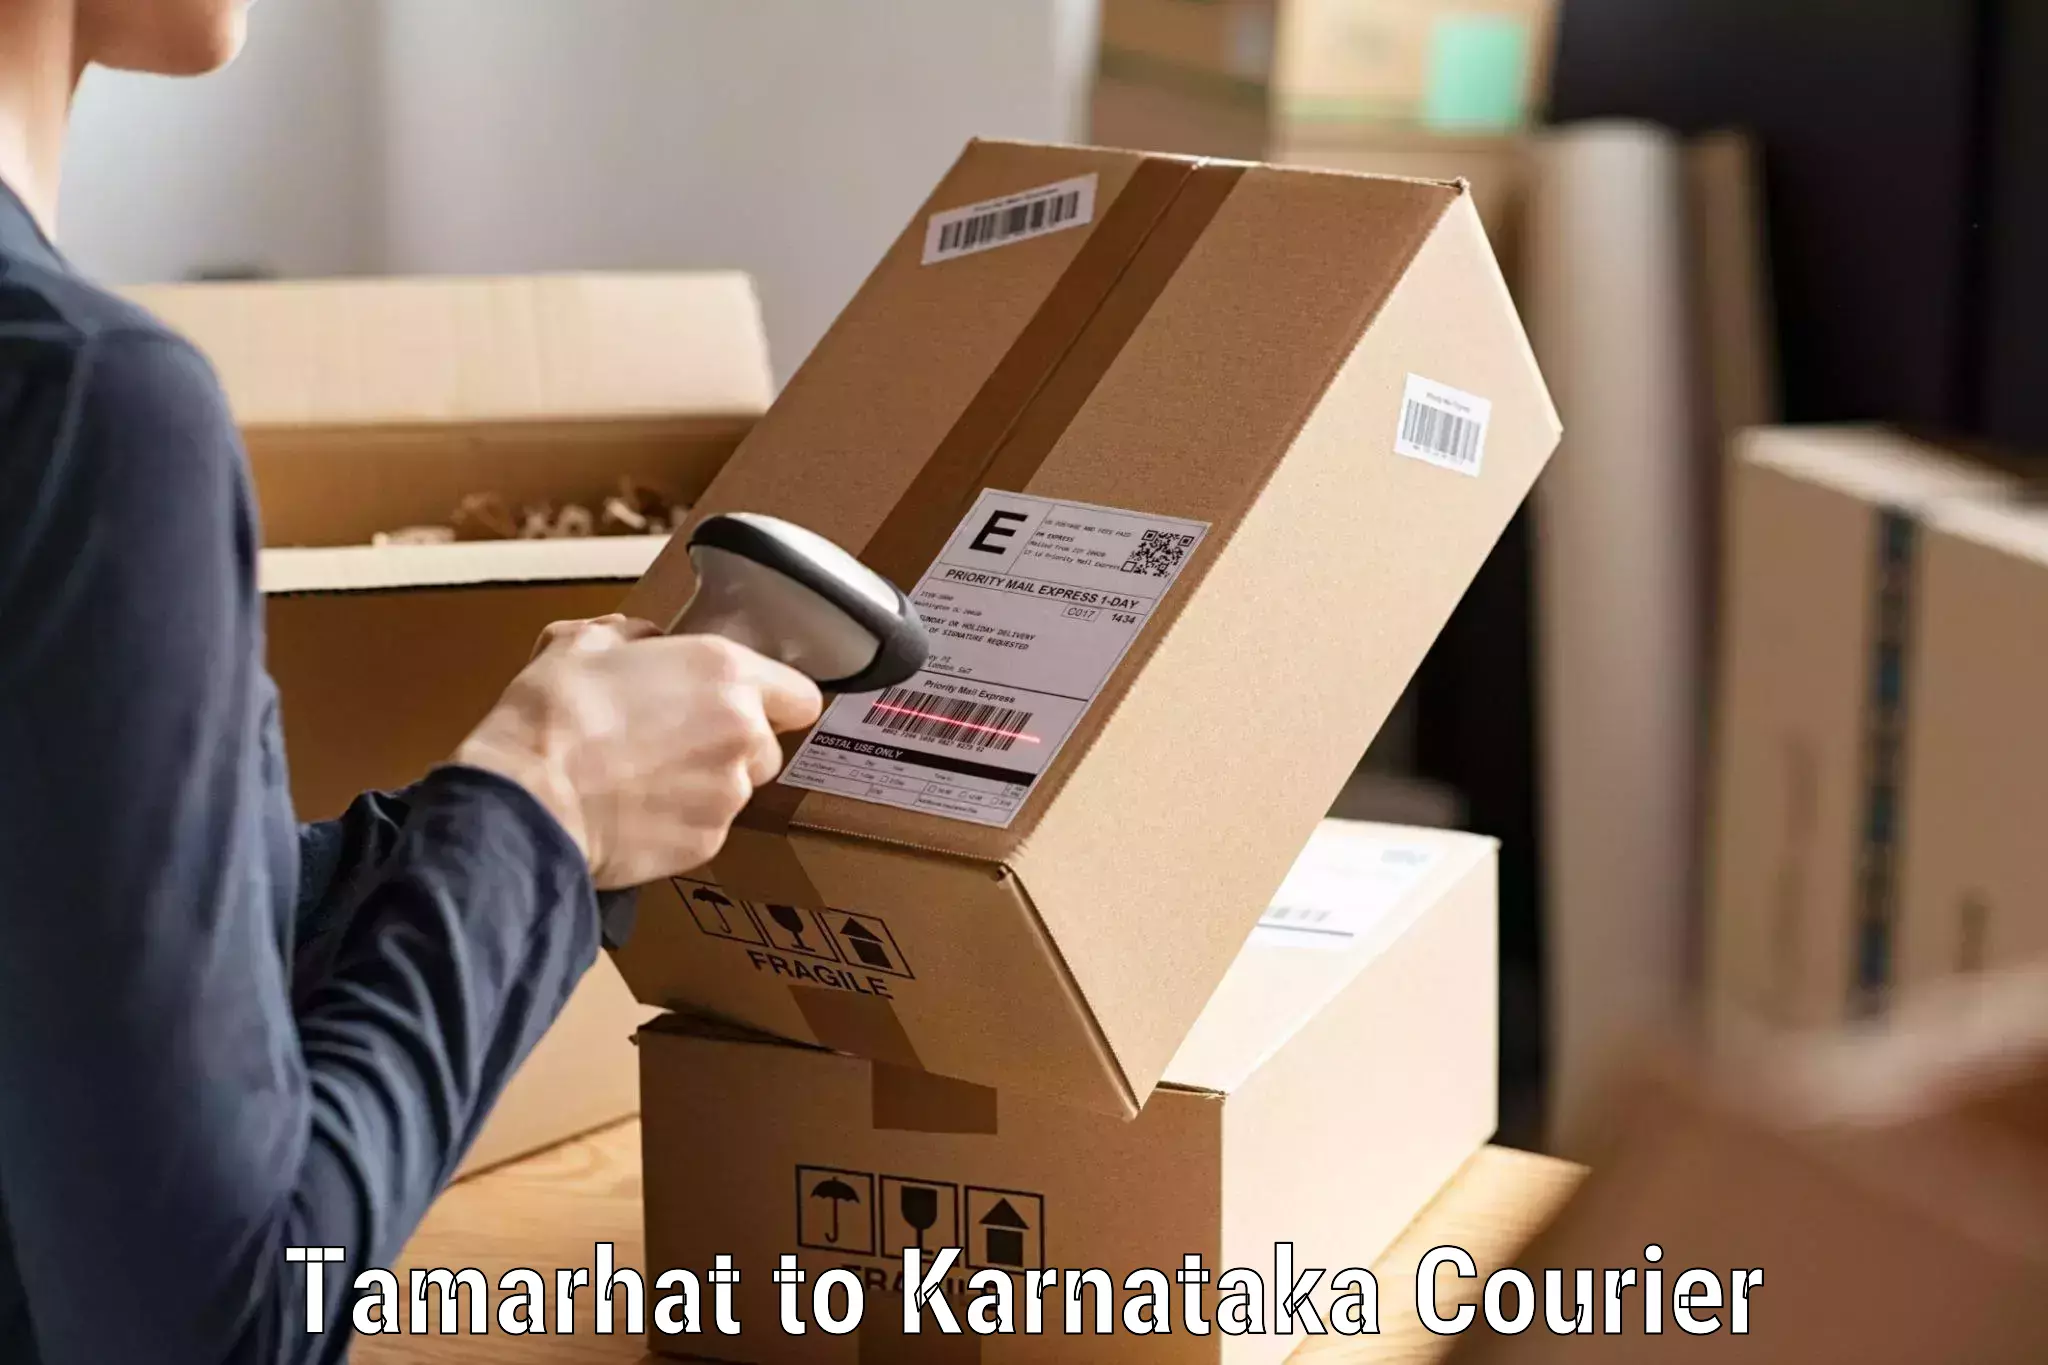 Ocean freight courier Tamarhat to Karnataka